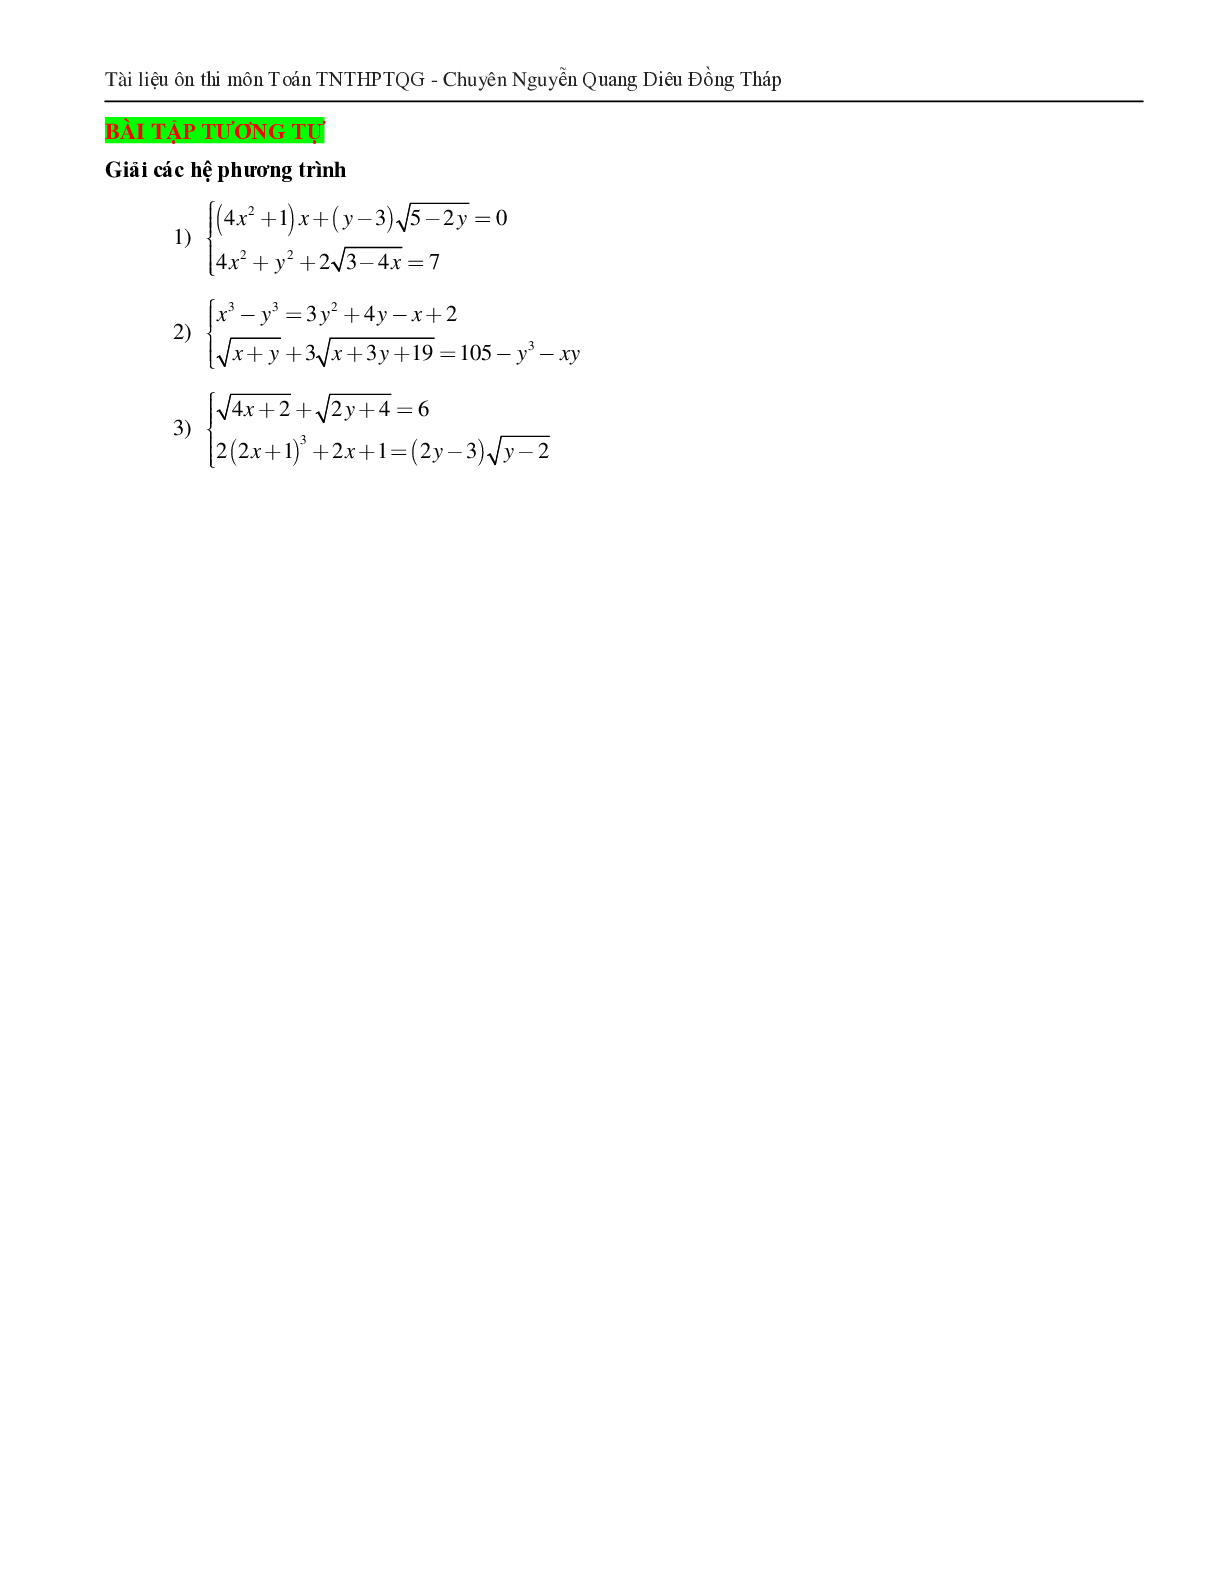 Giải hệ phương trình bằng phương pháp hàm số (trang 7)